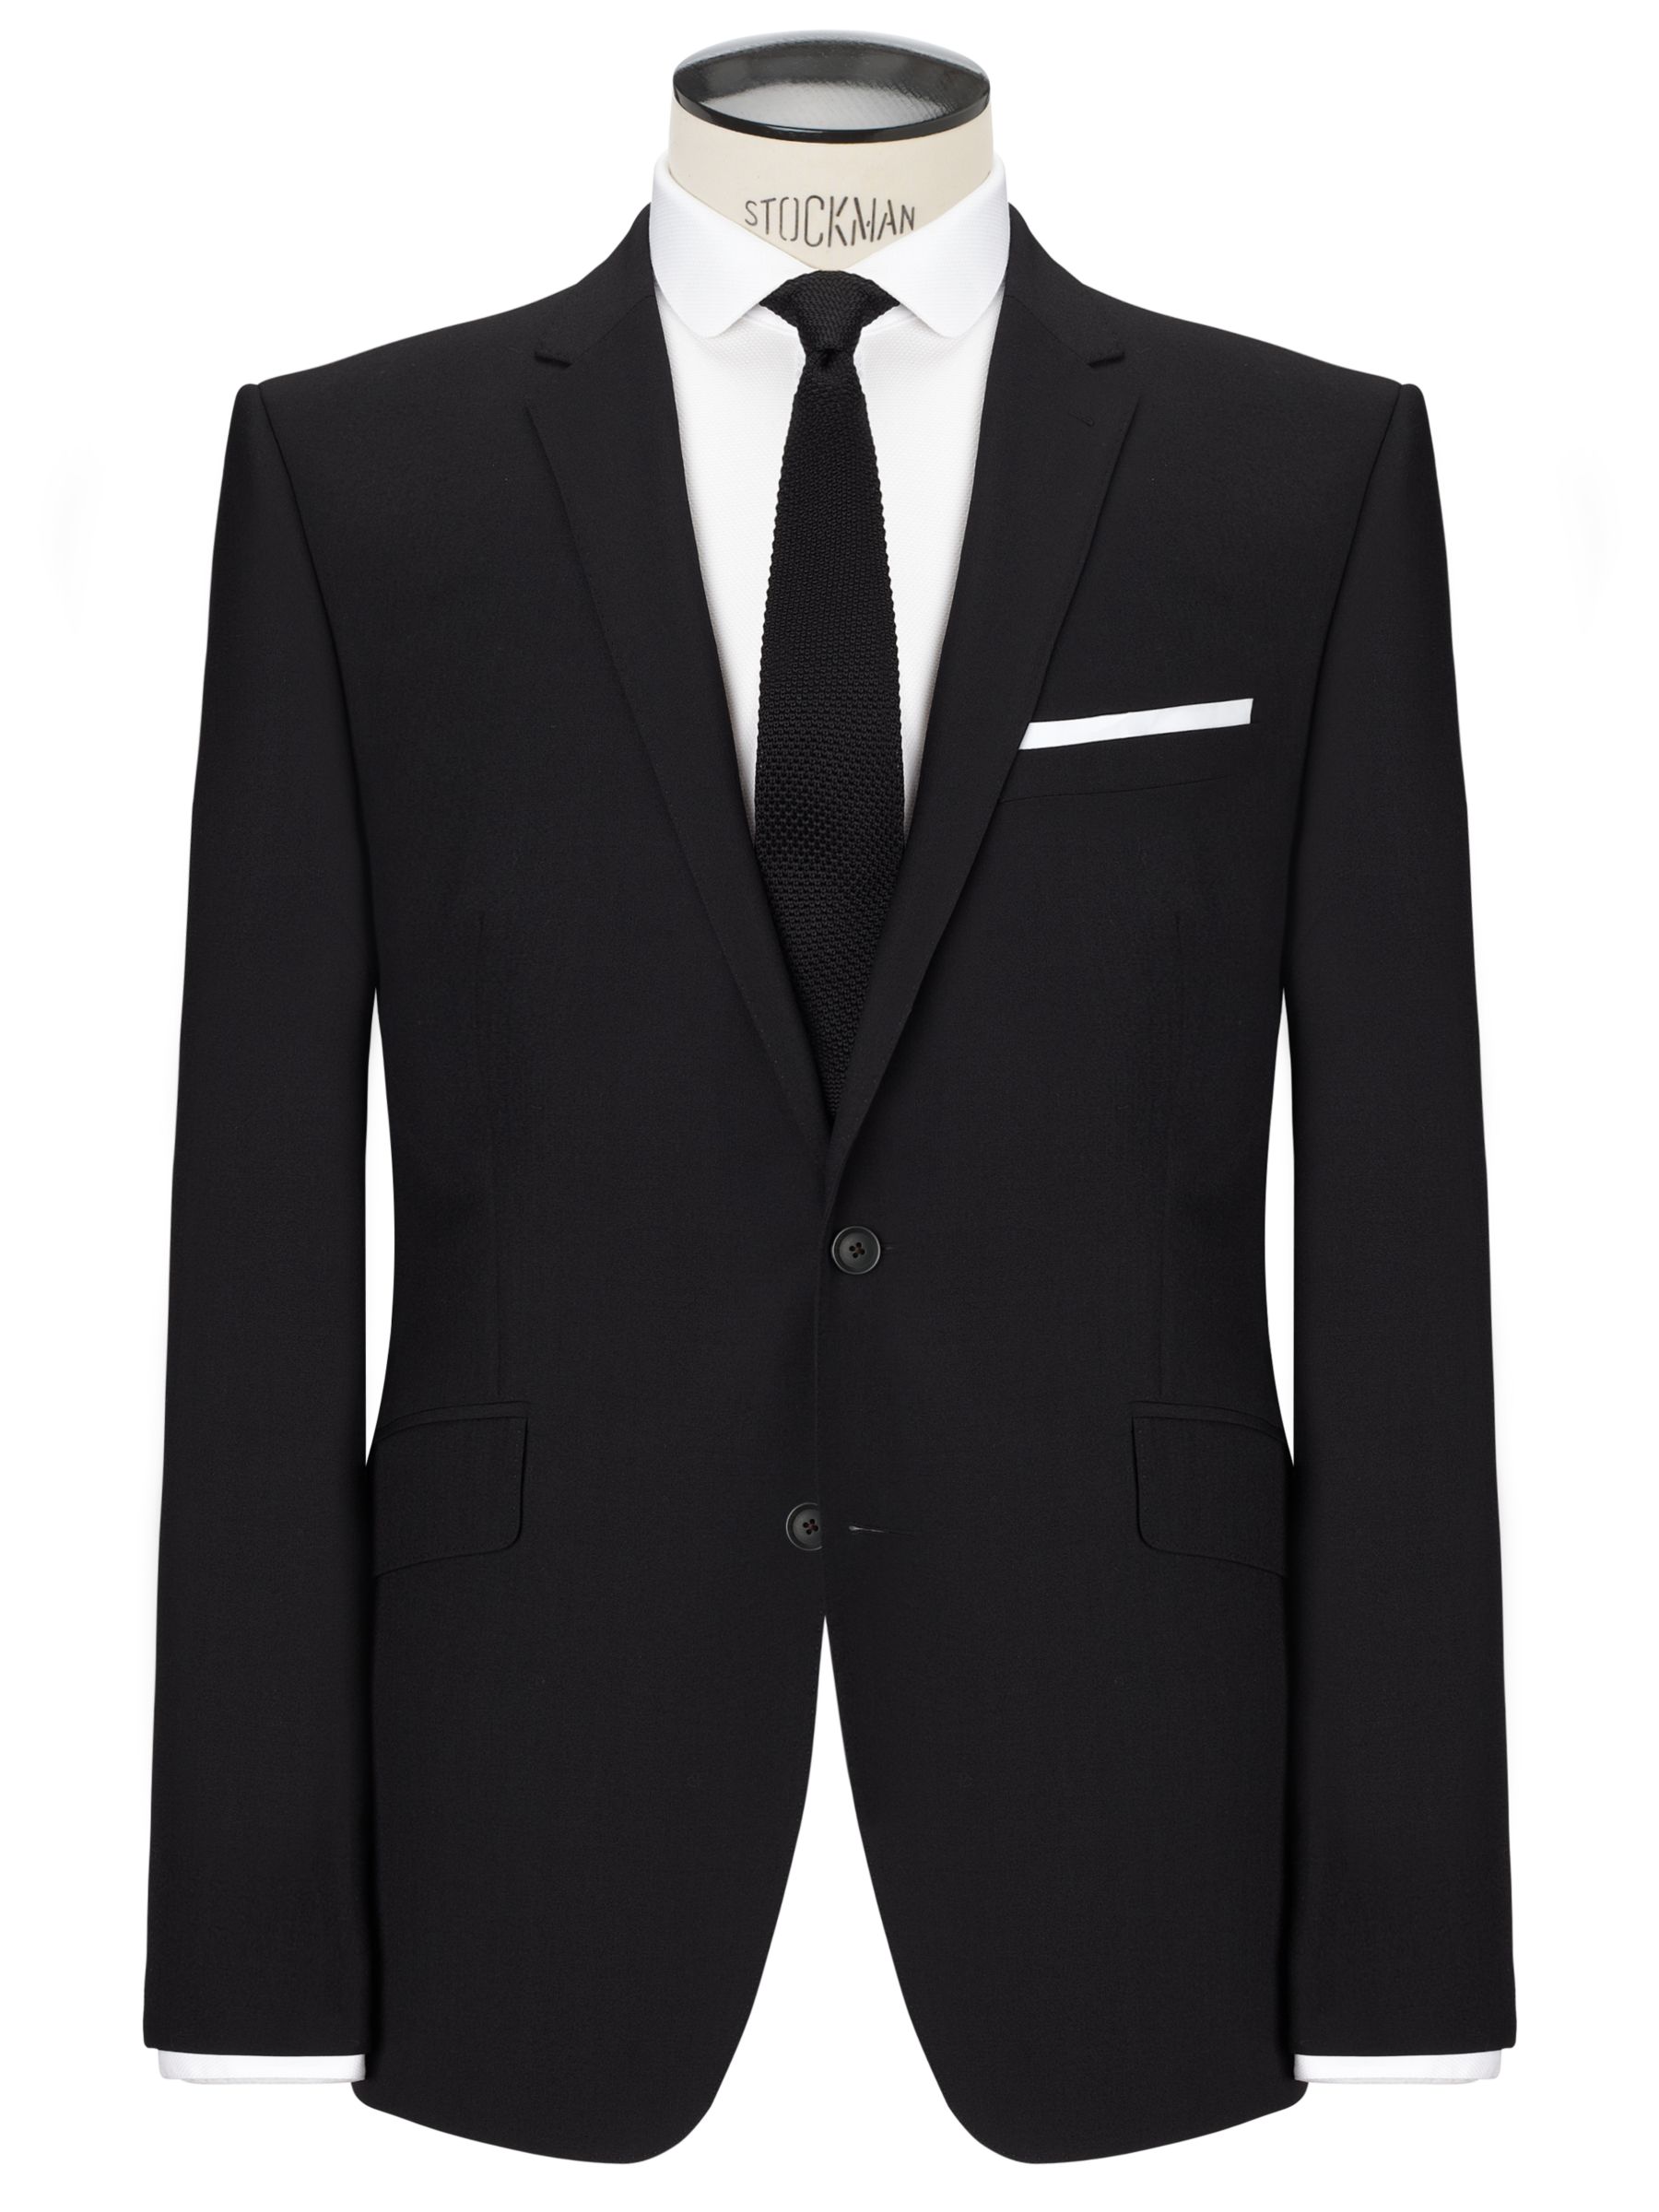 Men's Suits Offers | John Lewis